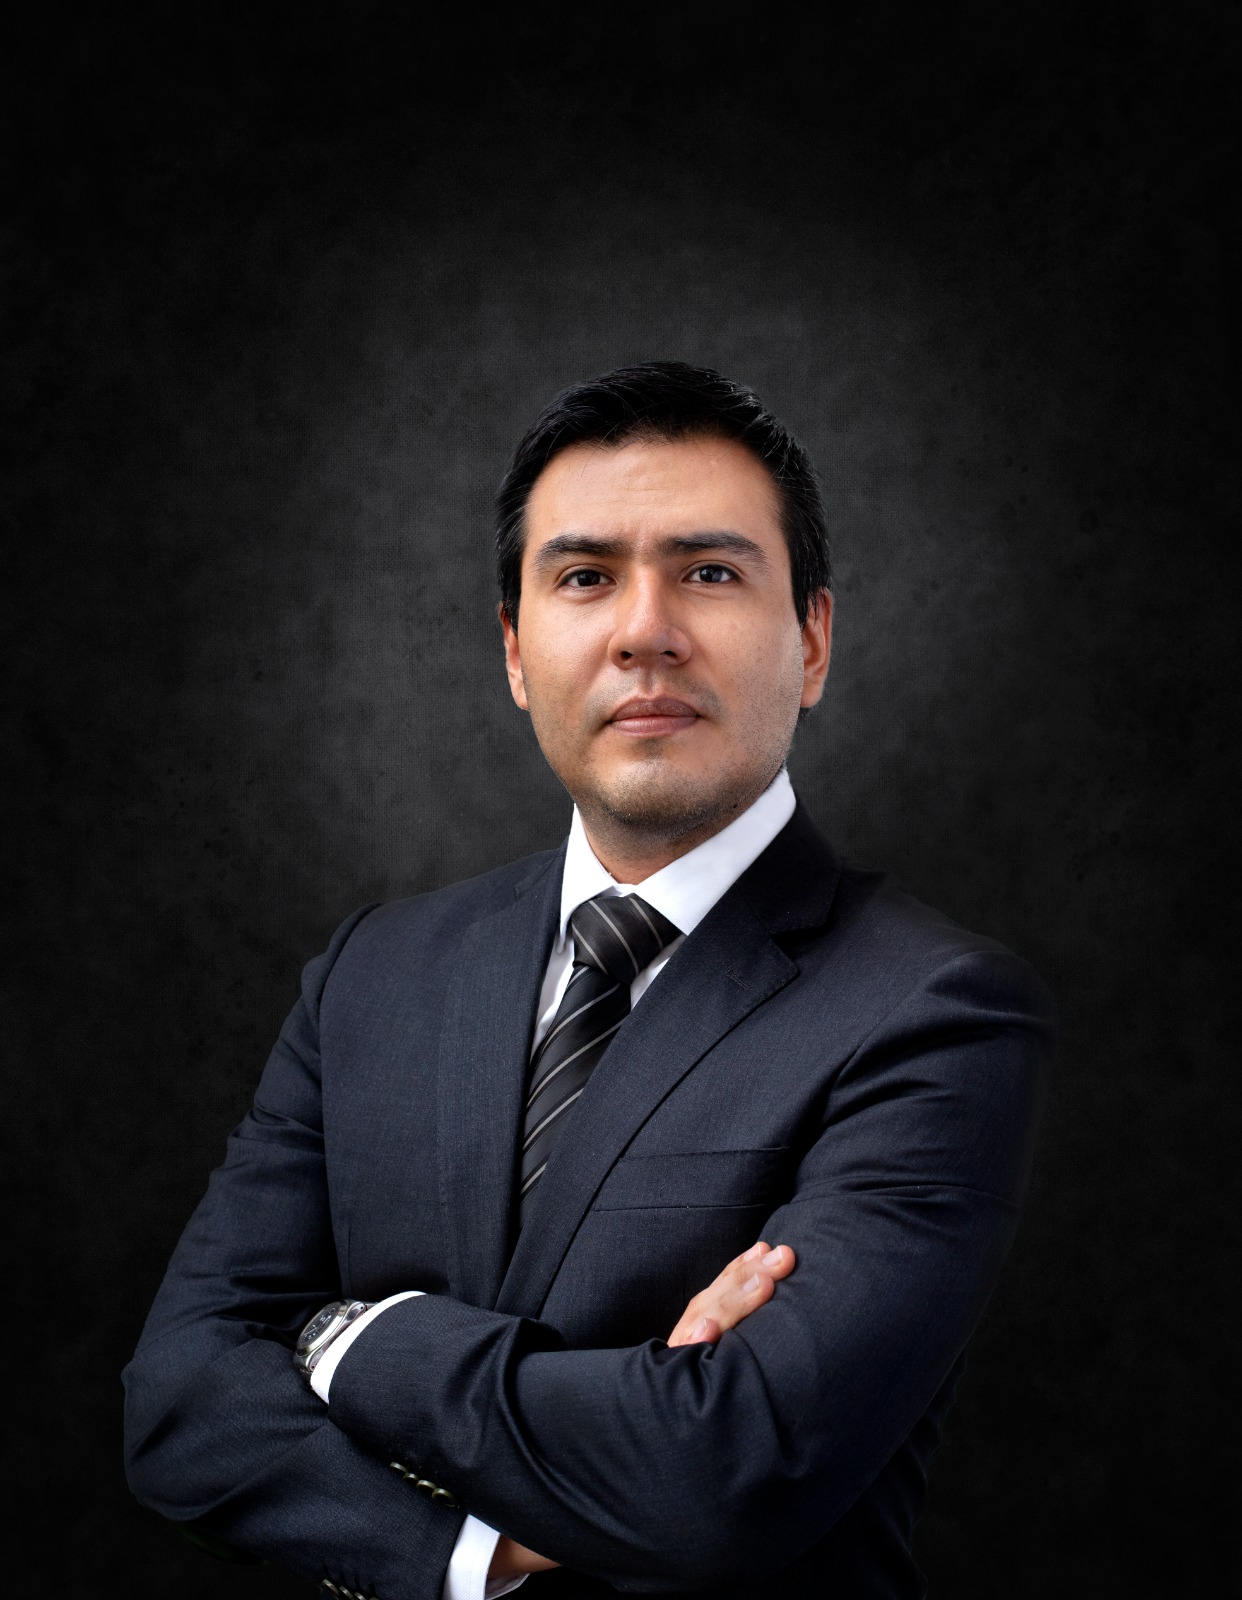 Sergio Ponce gestión de marcos ágiles